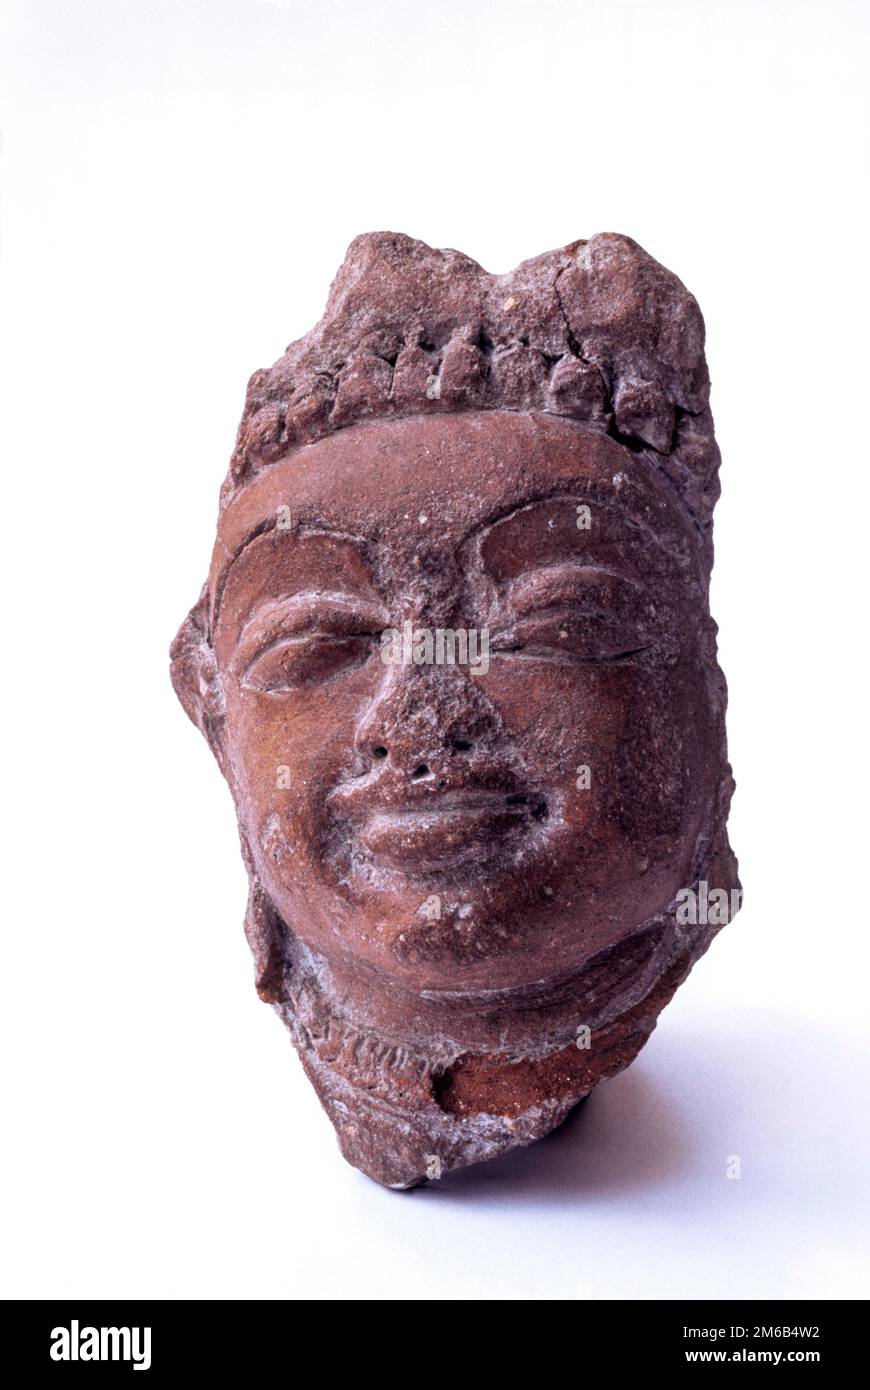 Figure de modélisation de Mythréya 5th siècle A. D recueilli à Muttom près de Boluvampatti, Coimbatore, Tamil Nadu, Inde du Sud, Inde, Asie Banque D'Images